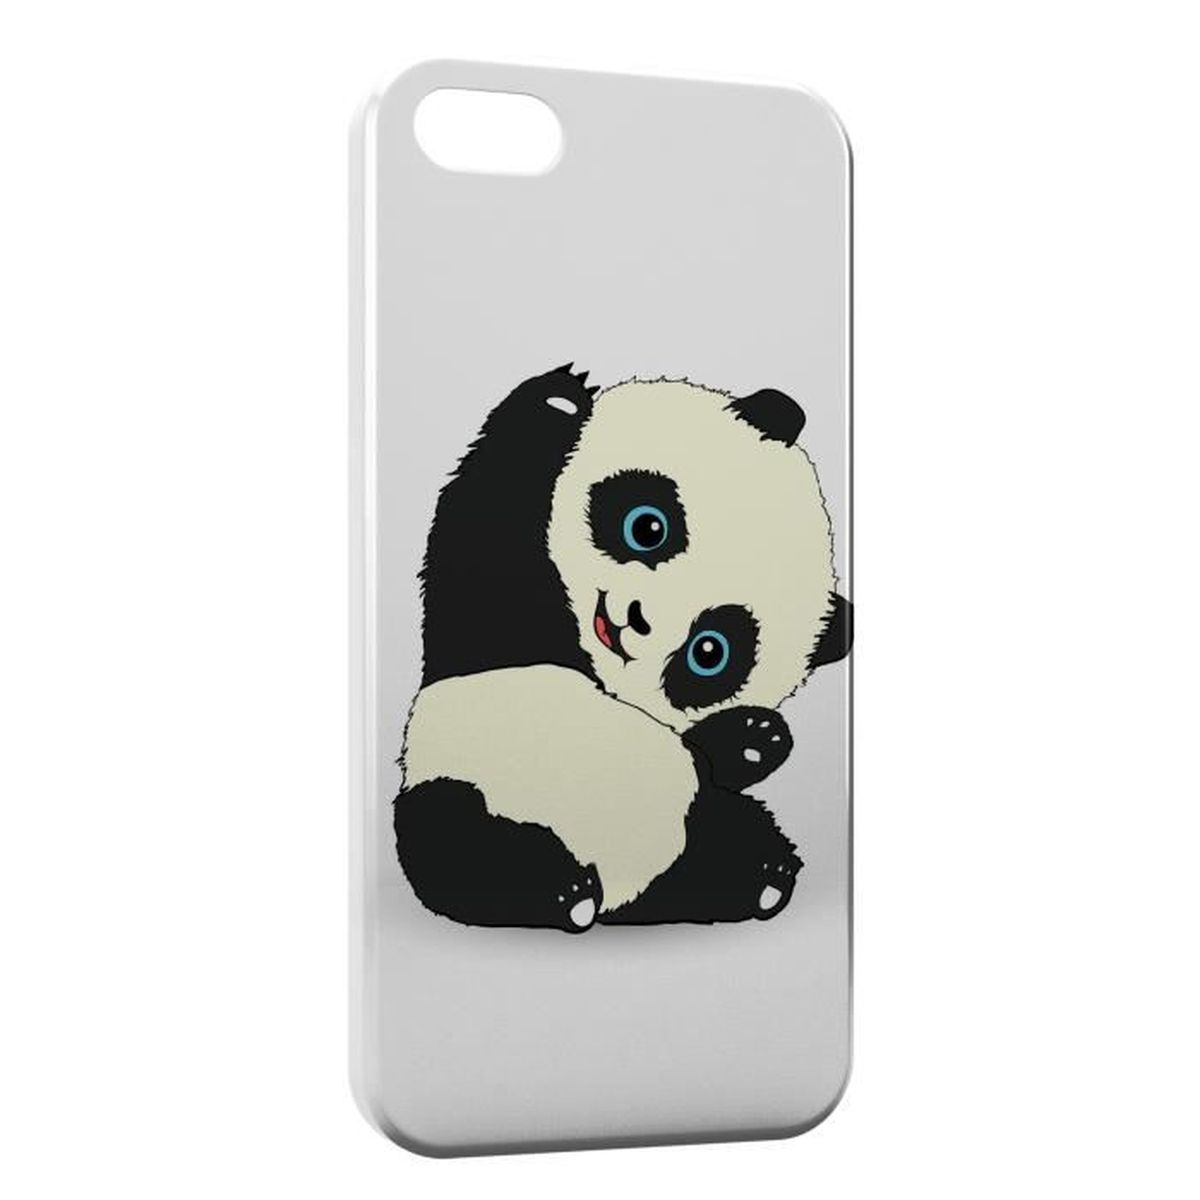 coque iphone 4 panda